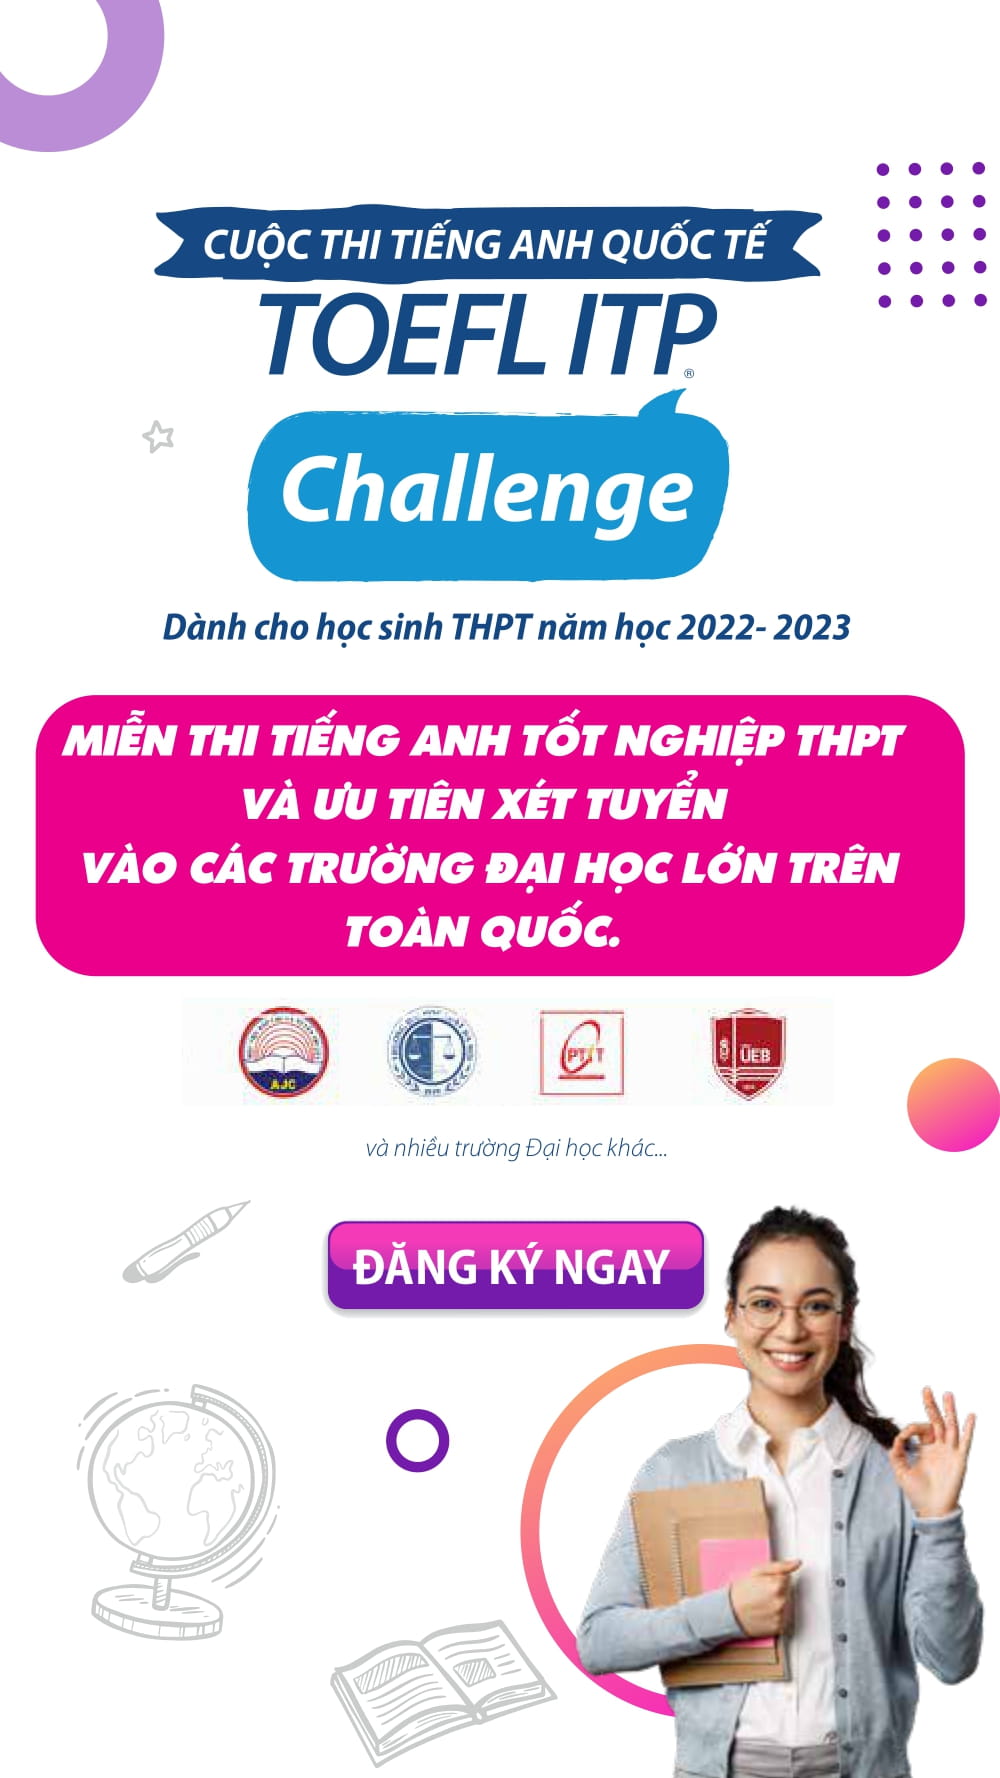 Tổ chức Giáo dục IIG Việt Nam chuyên đào tạo người học các kỹ năng ngoại ngữ và tiếng Anh theo chuẩn quốc tế, giúp họ tự tin giao tiếp trong môi trường công việc quốc tế. Hãy xem hình ảnh để khám phá môi trường học tập đầy tươi mới và hiện đại của tổ chức.